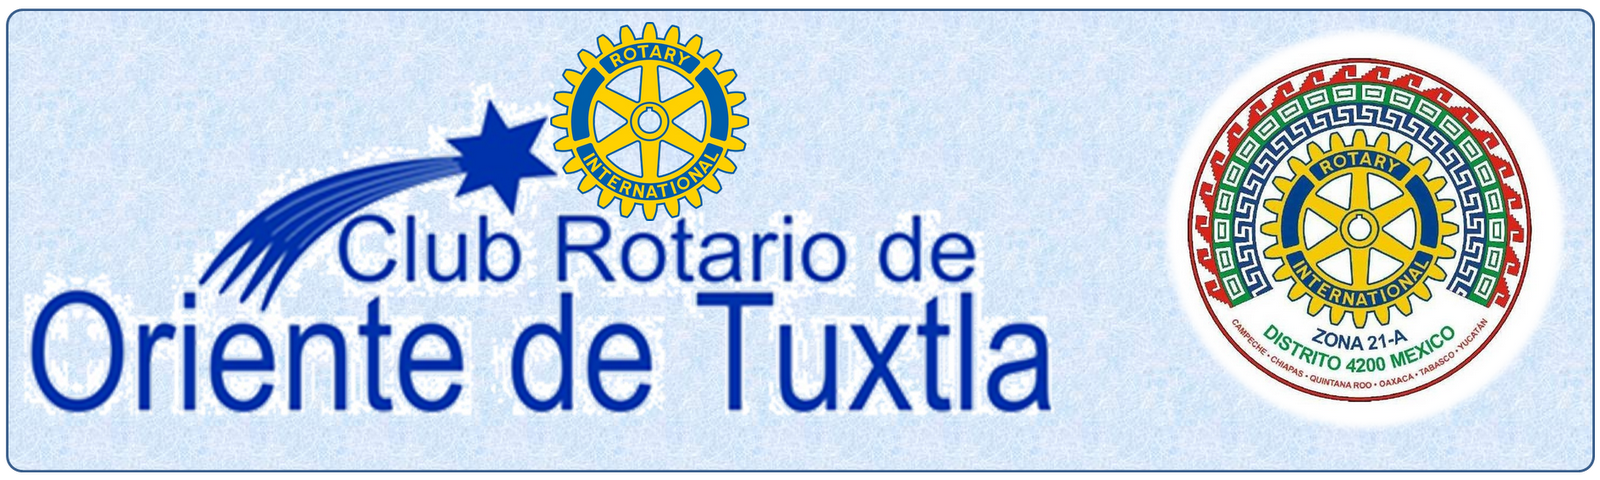 Rotary Club Oriente de Tuxtla Gutierrez